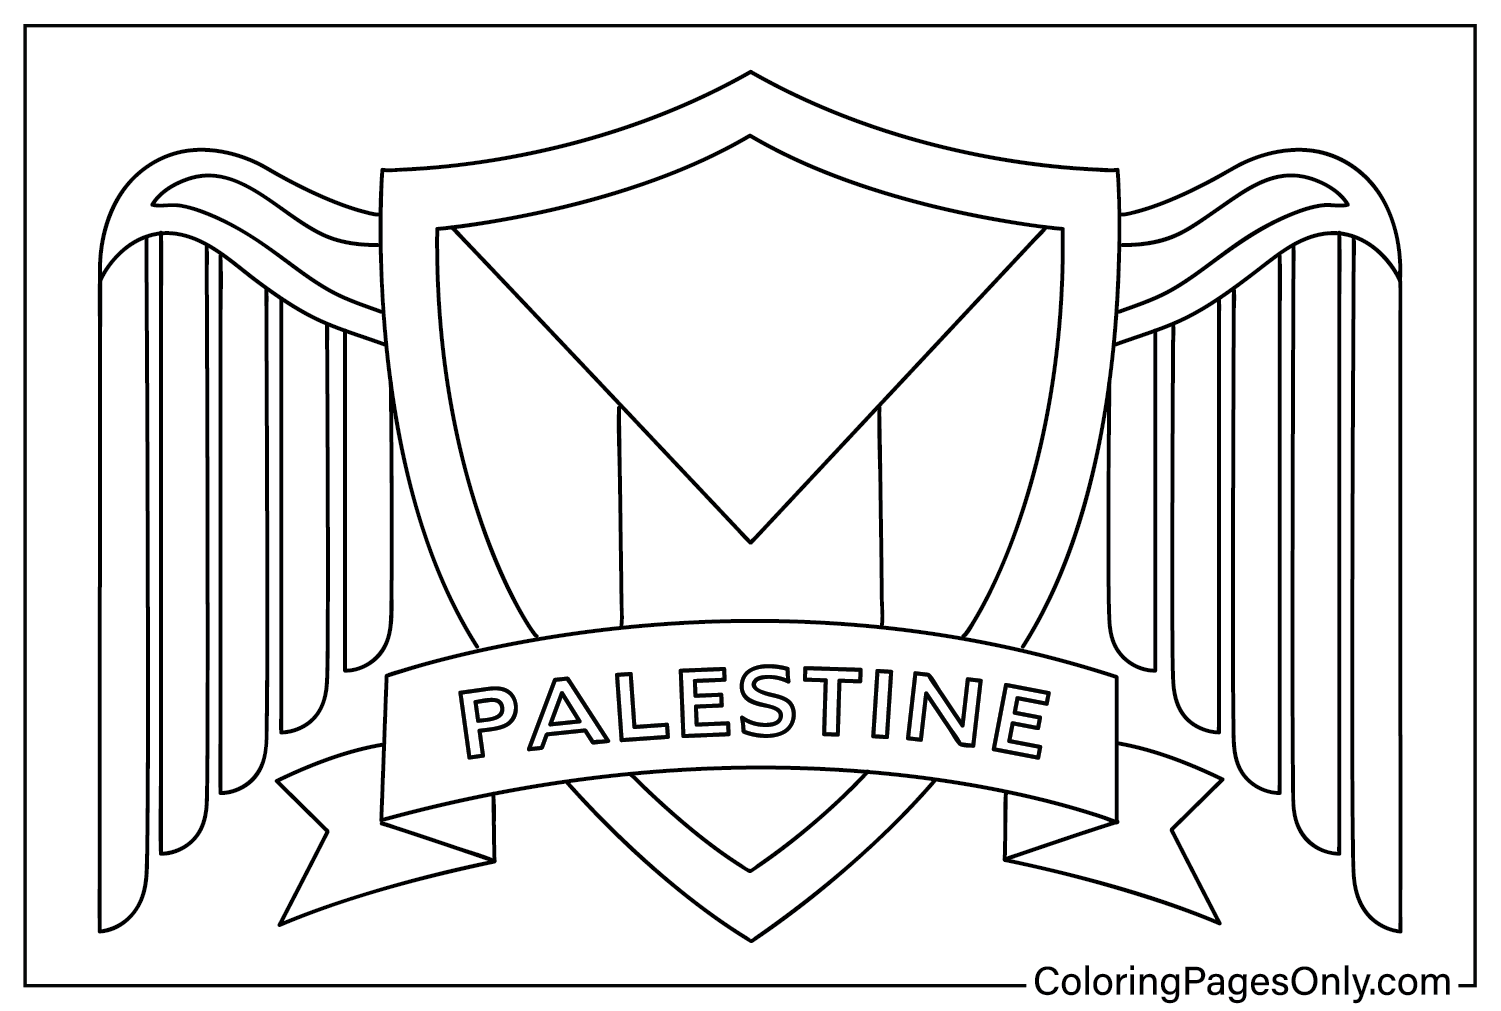 Palästina-Färbung